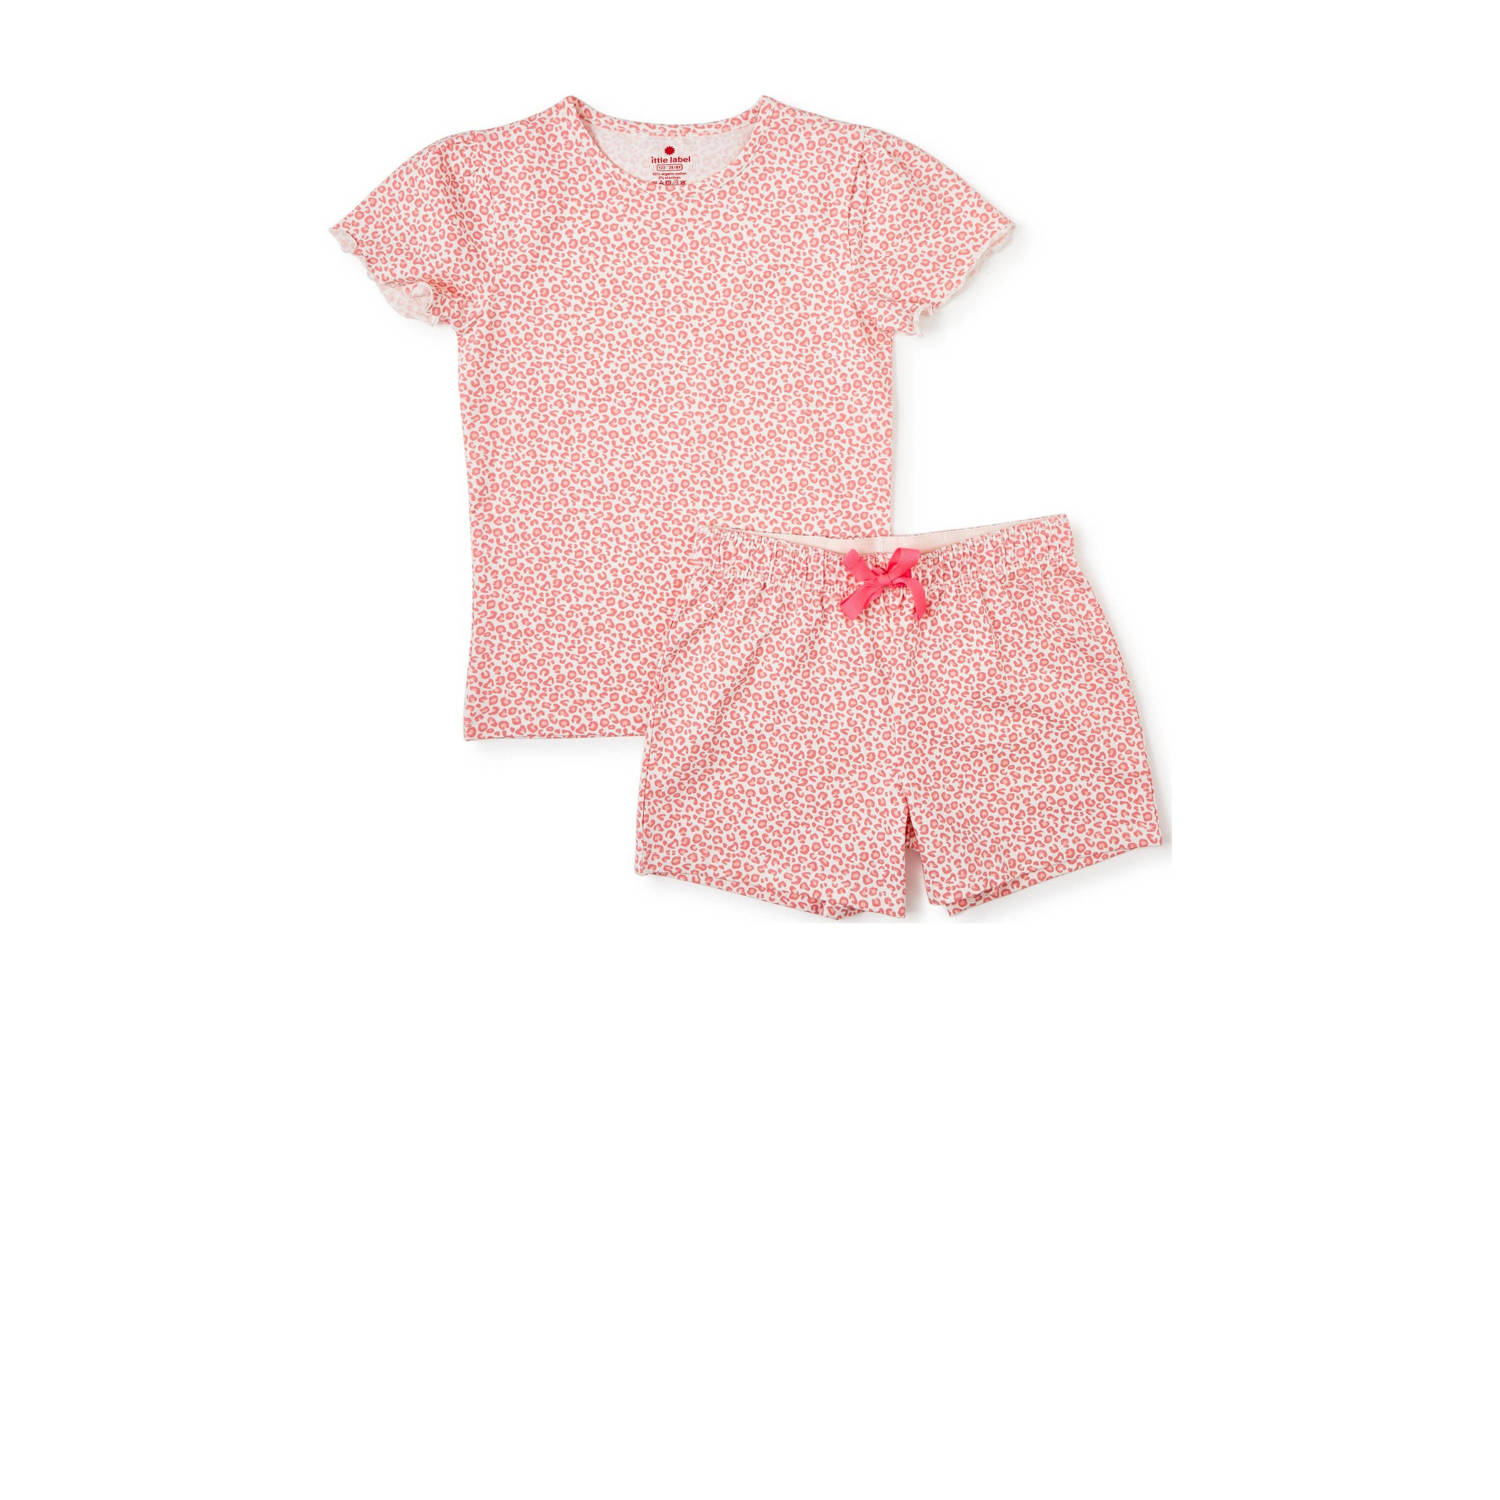 Little Label shortama met panterprint roze Meisjes Stretchkatoen Ronde hals 110 116